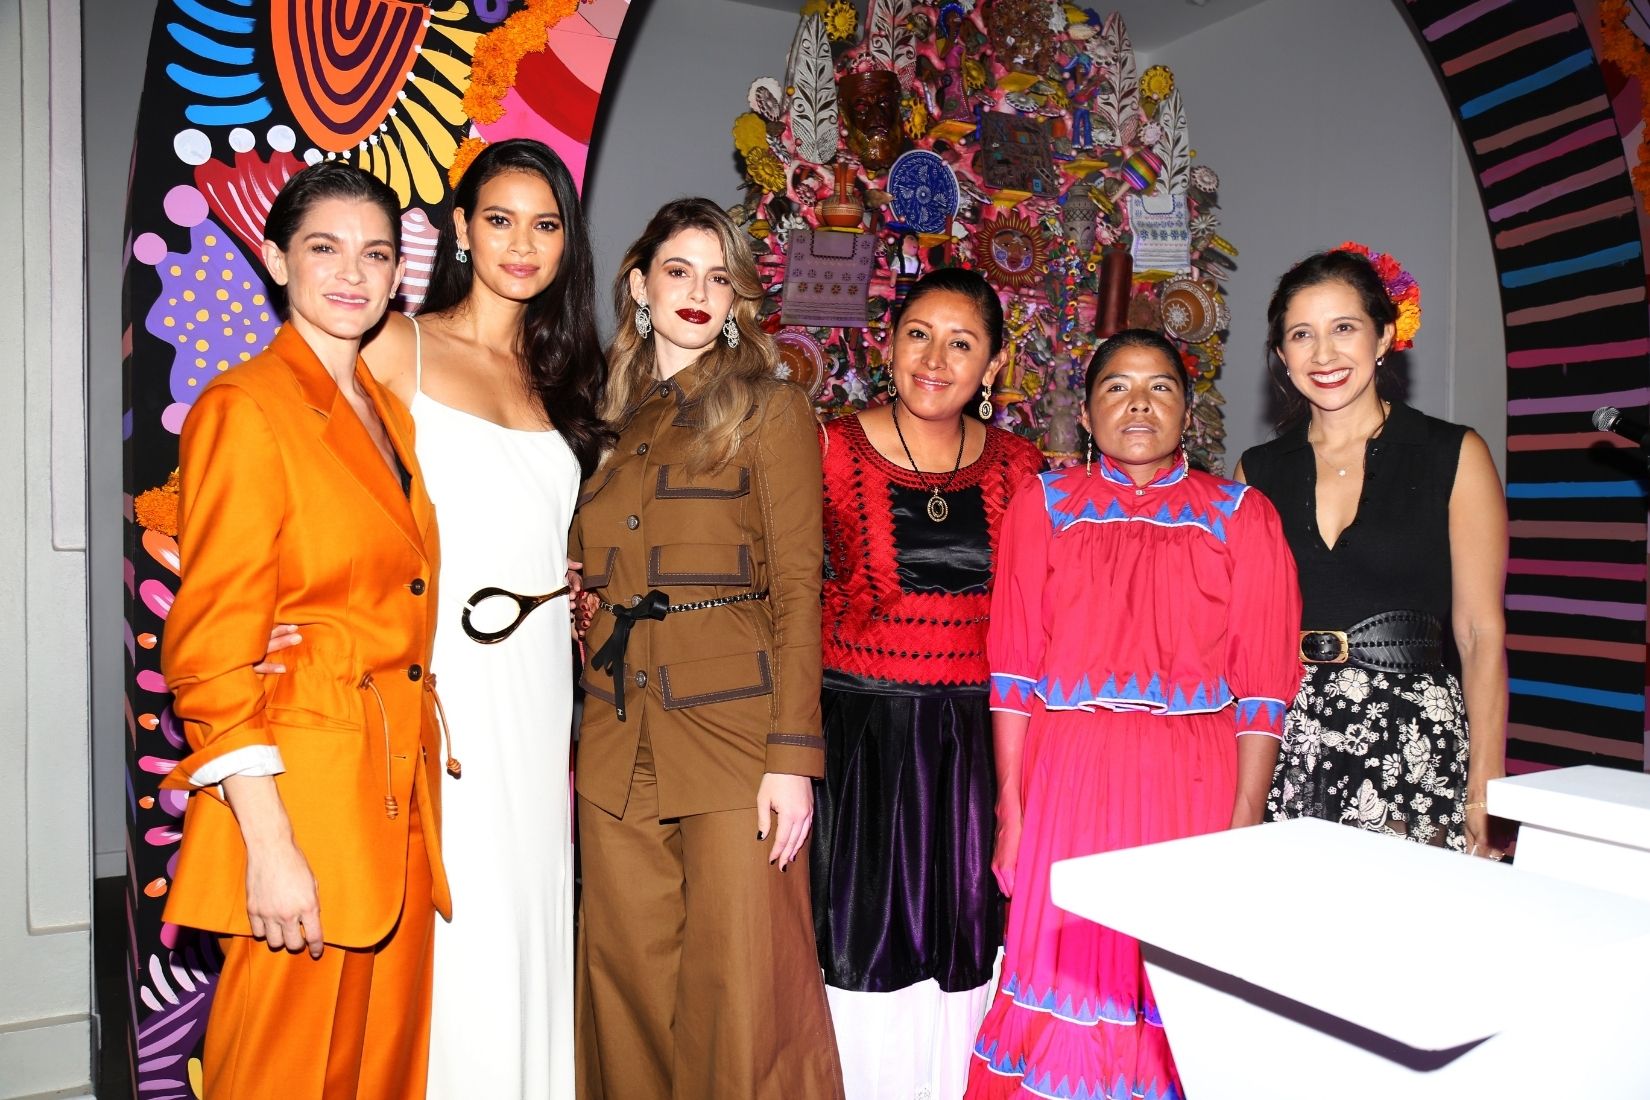 Irene Azuela, Chiara Parraviccini, Lorena y Karla Martínez de Salas en Aniversario Vogue. (Foto: Vogue).